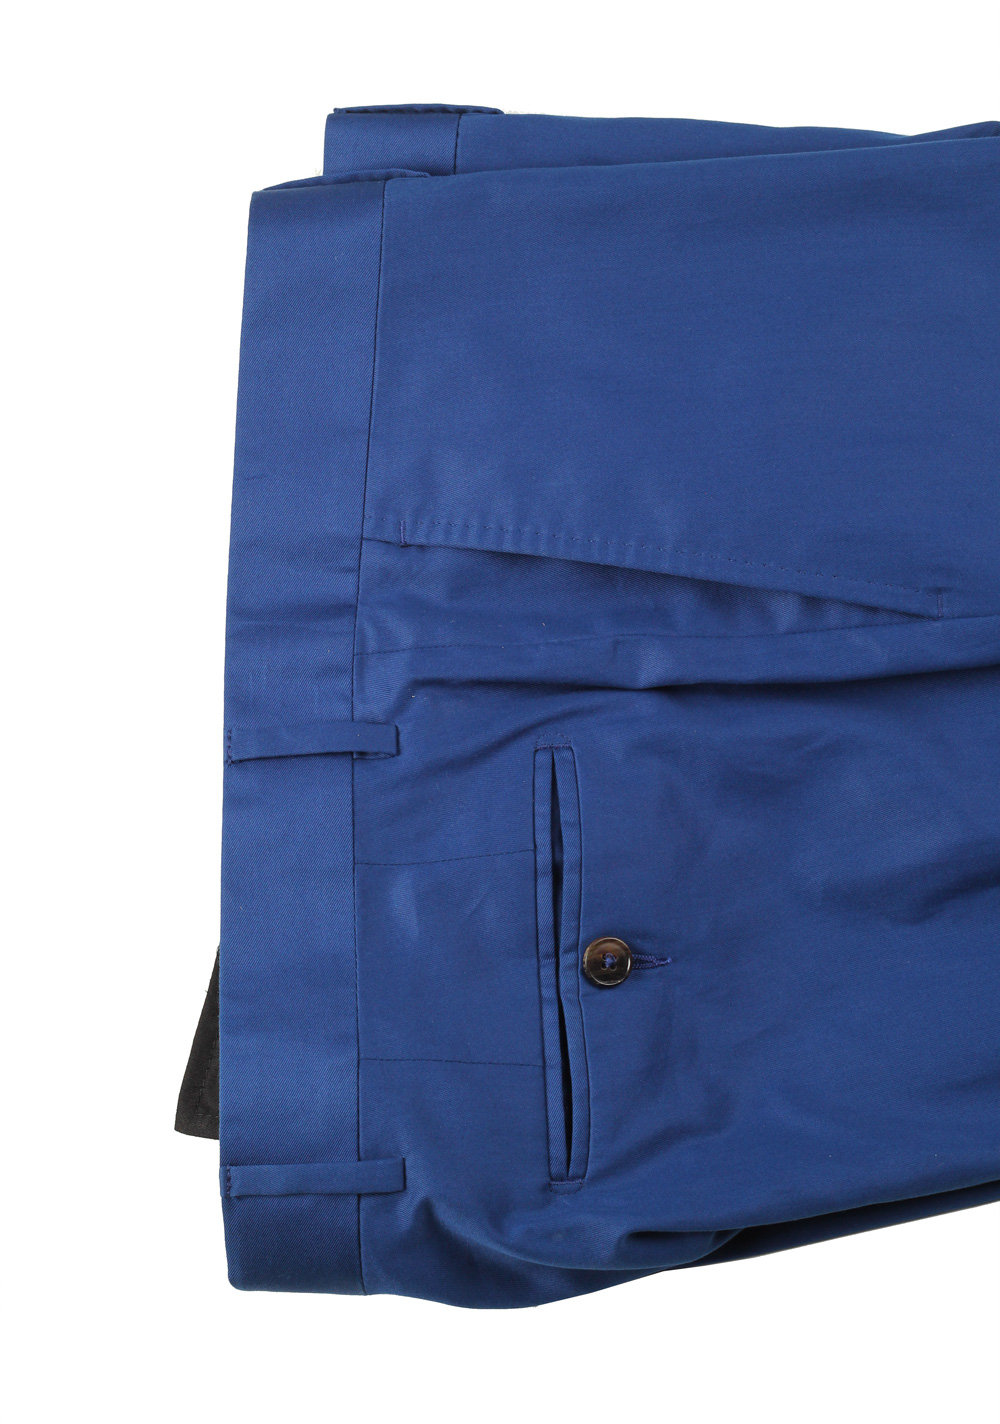 Gucci Royal Blue Suit Size 52 / 42R U.S. Cotton | Costume Limité